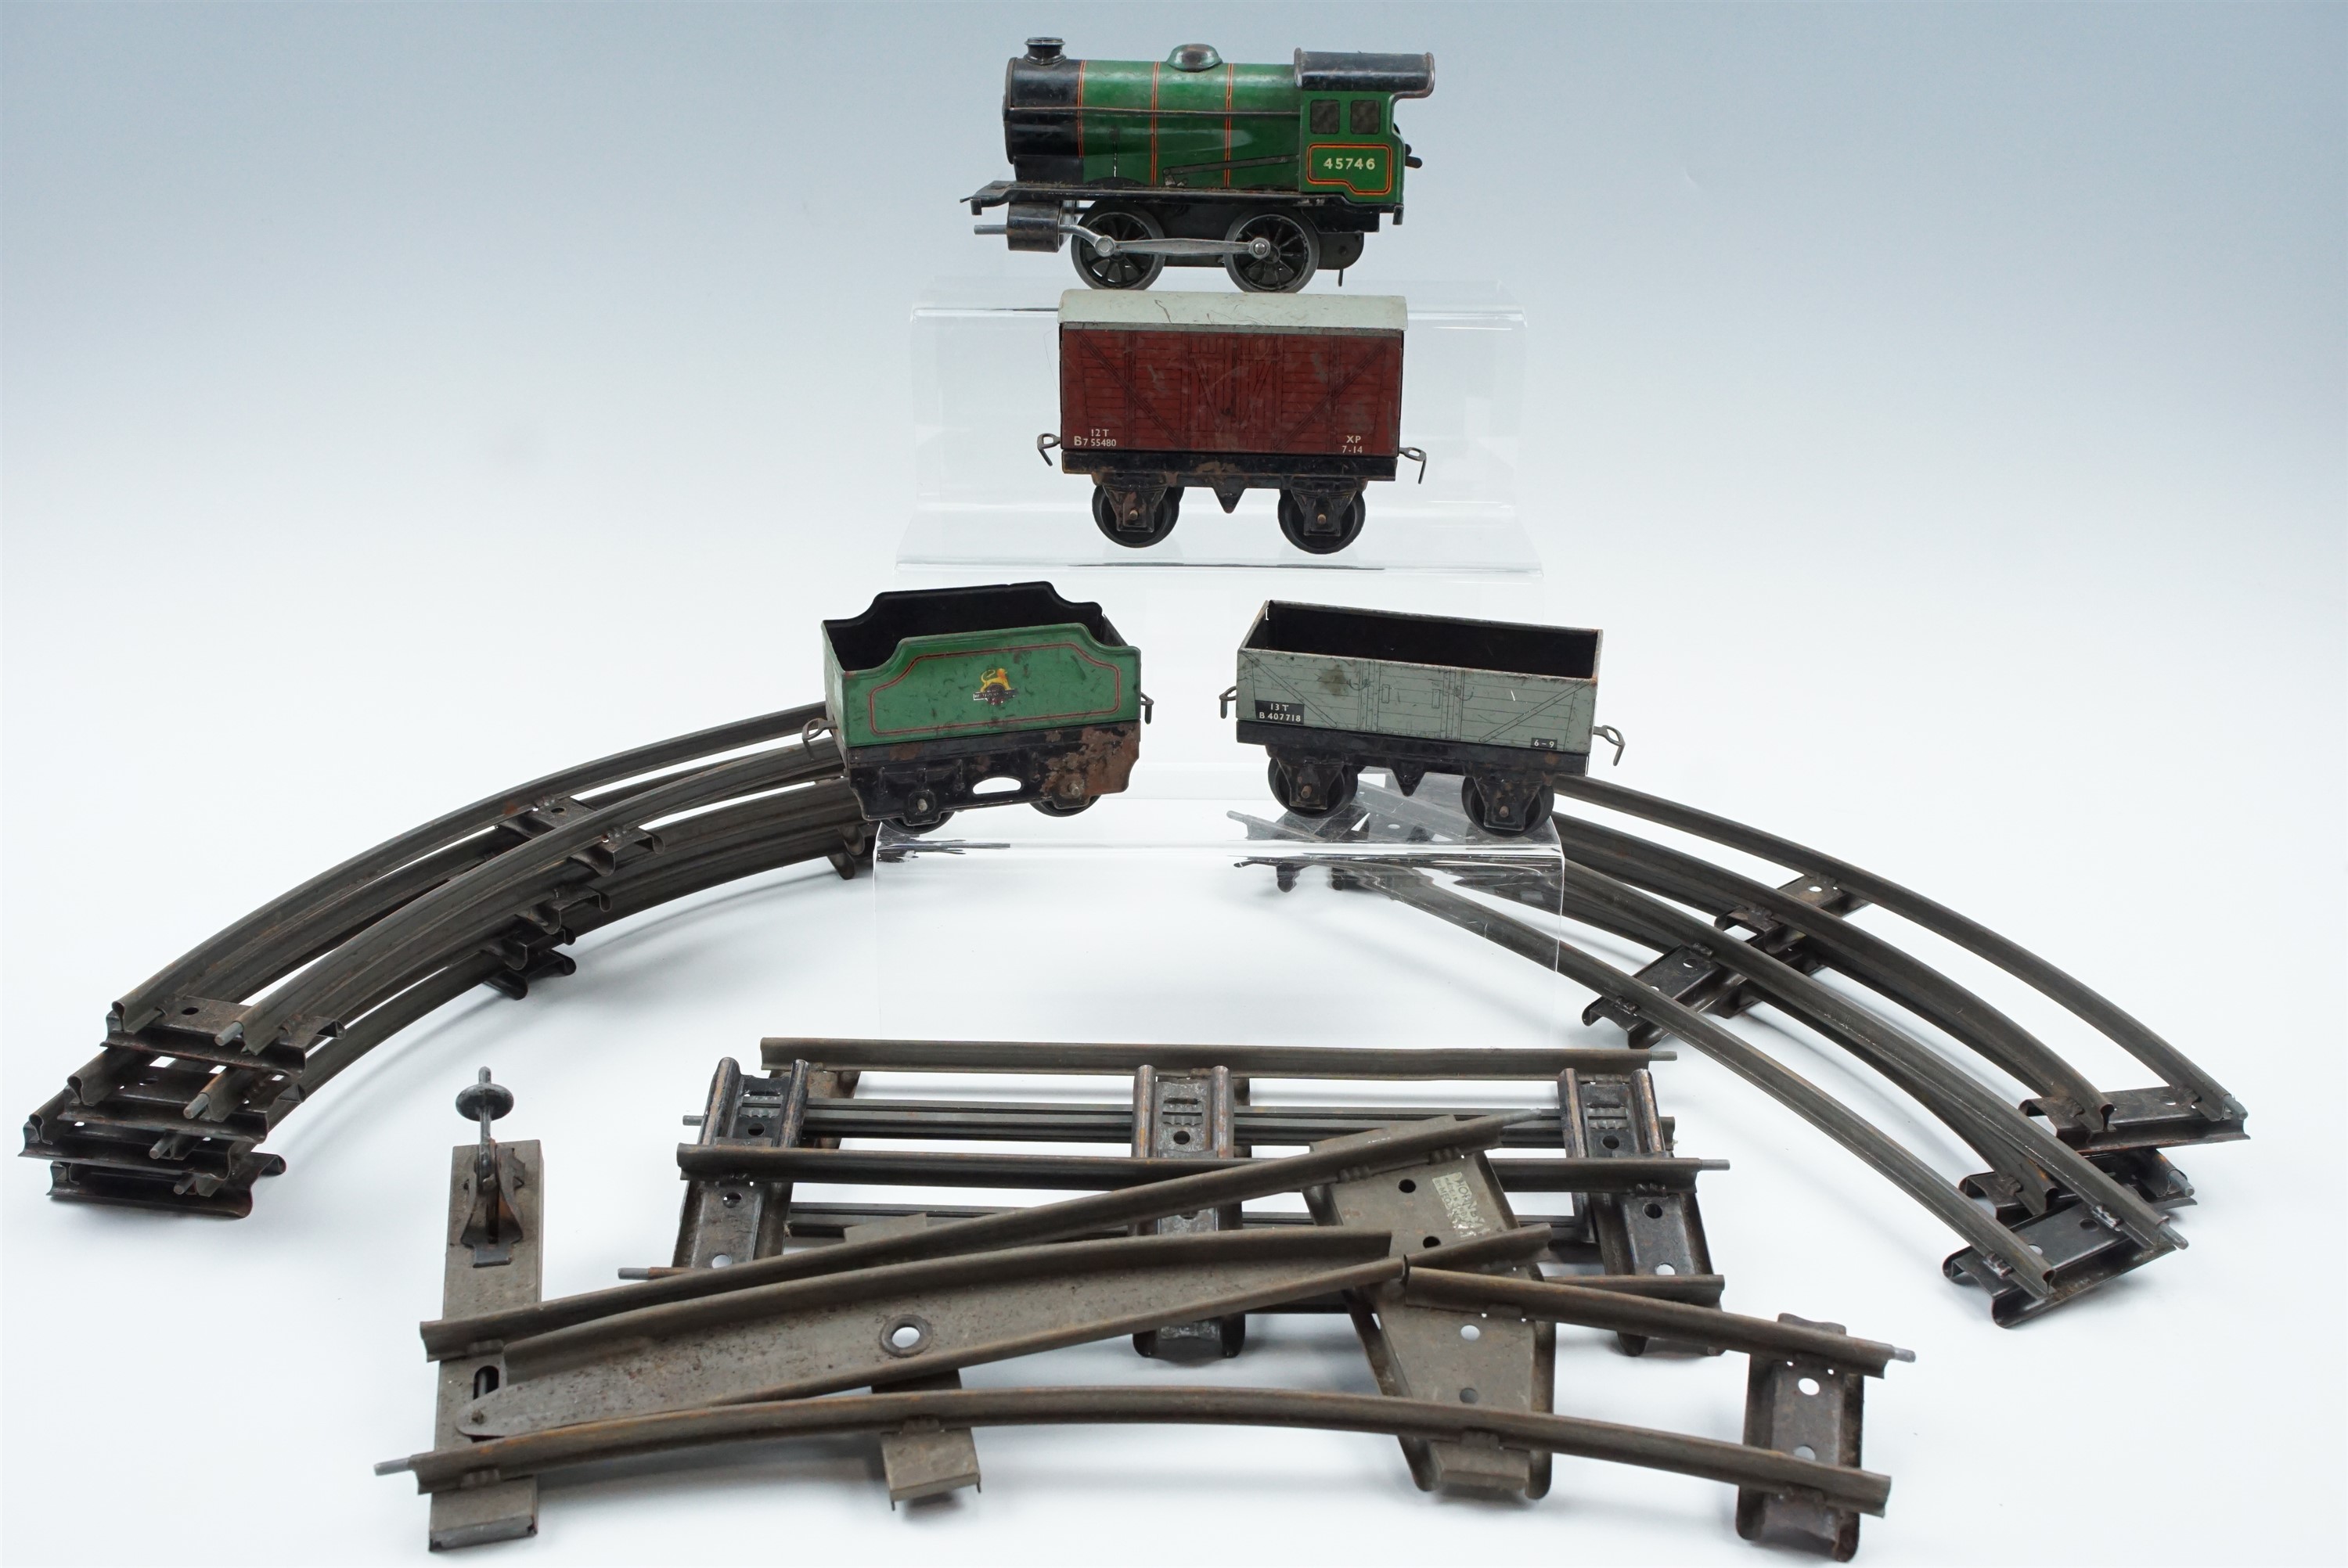 A Hornby O-gauge train set including a railway locomotive, a small quantity of track etc